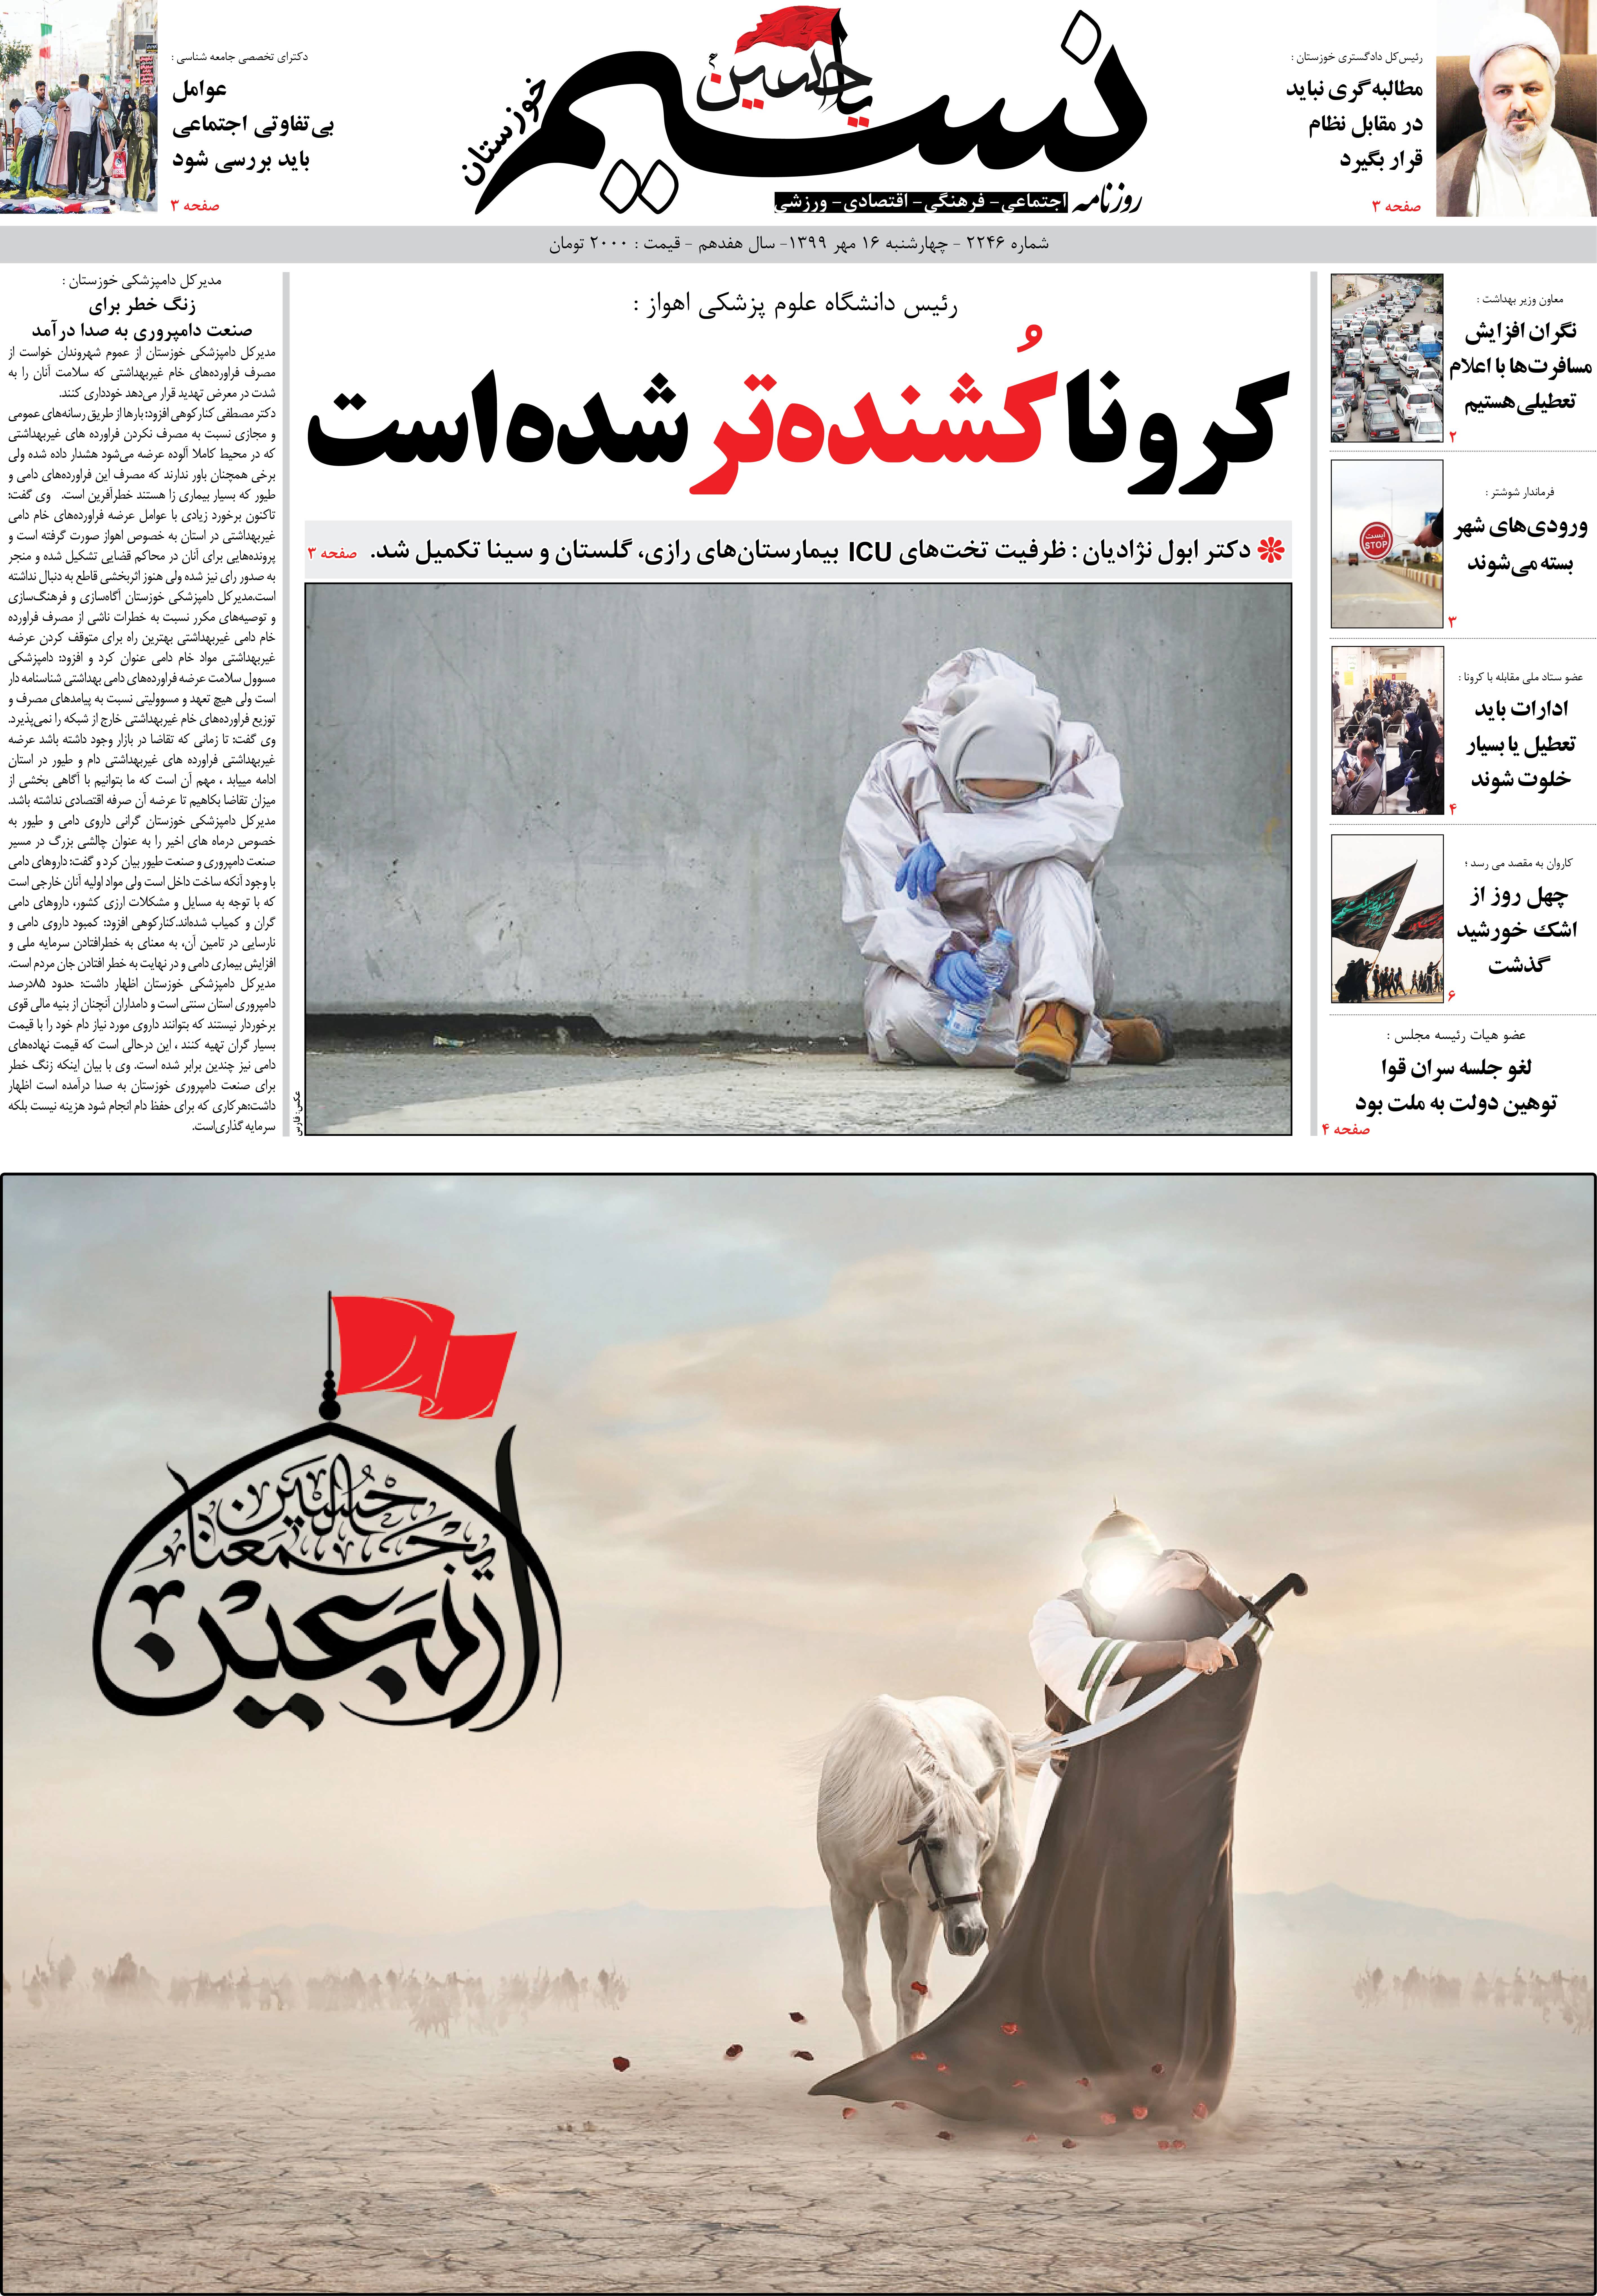 صفحه اصلی روزنامه نسیم شماره 2246 